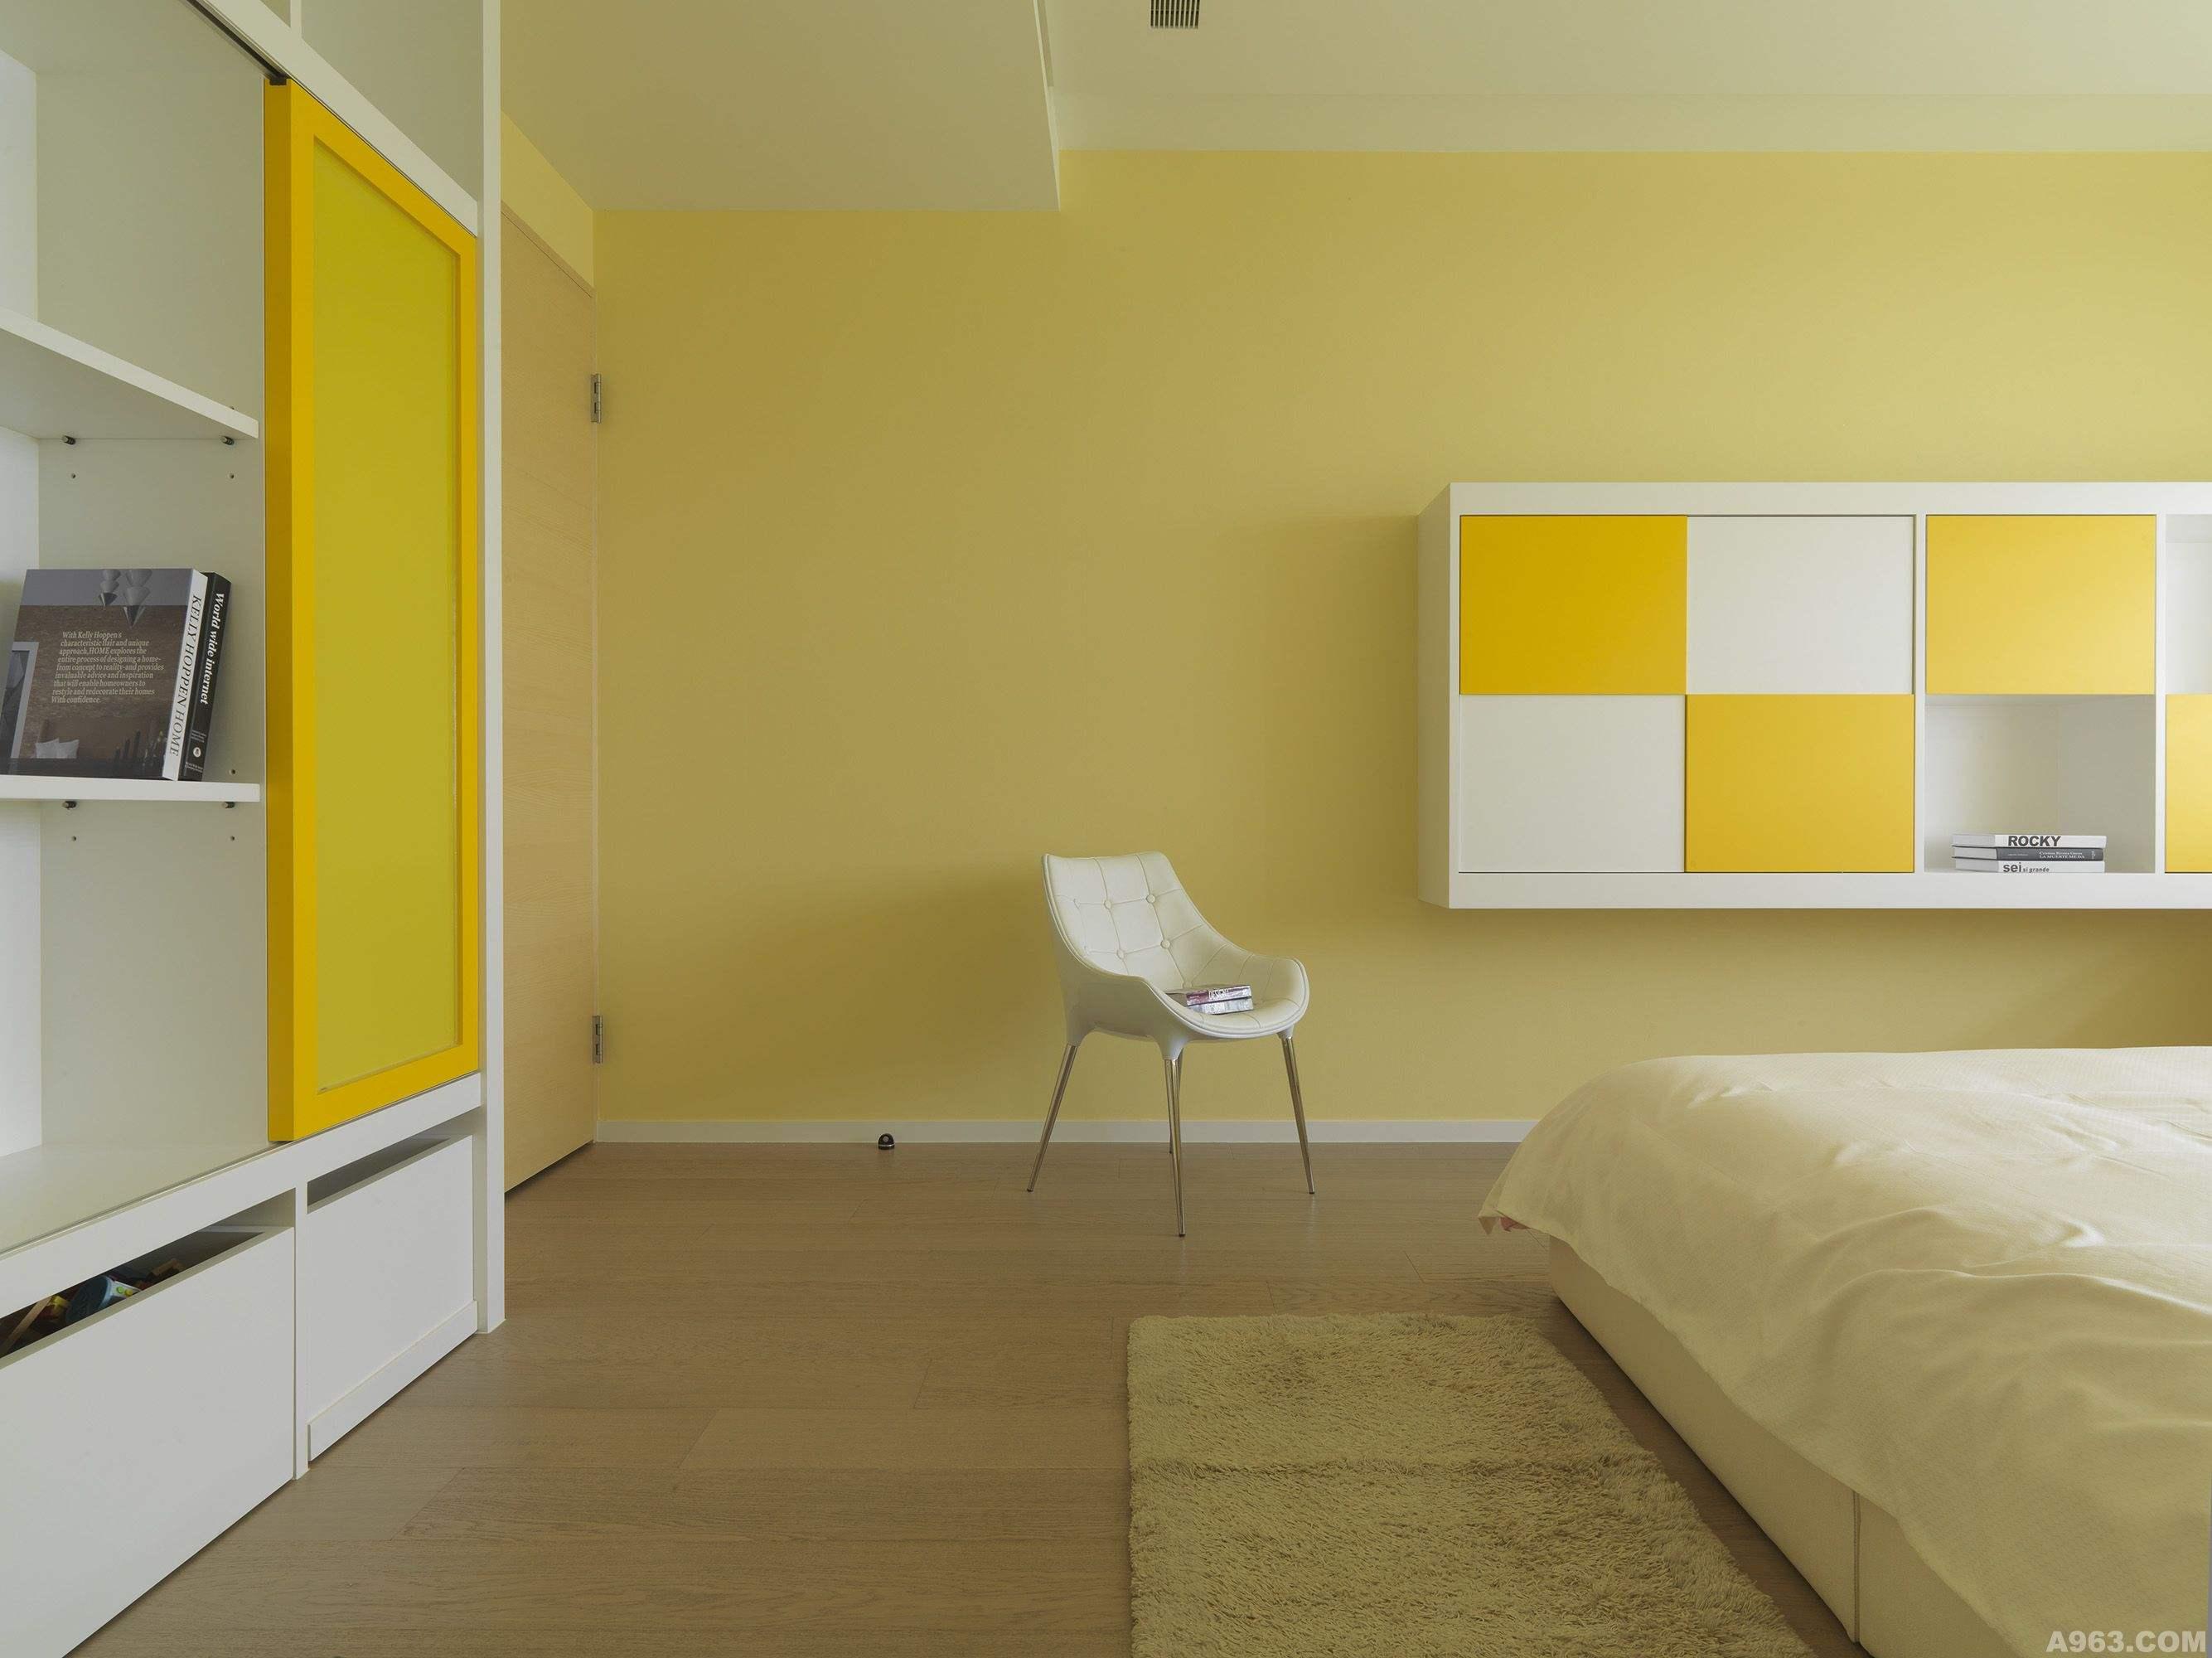 卧室的背景墙是采用的墨绿色的艺术涂料搭配窗帘及原木色的地板简_装修美图-新浪家居